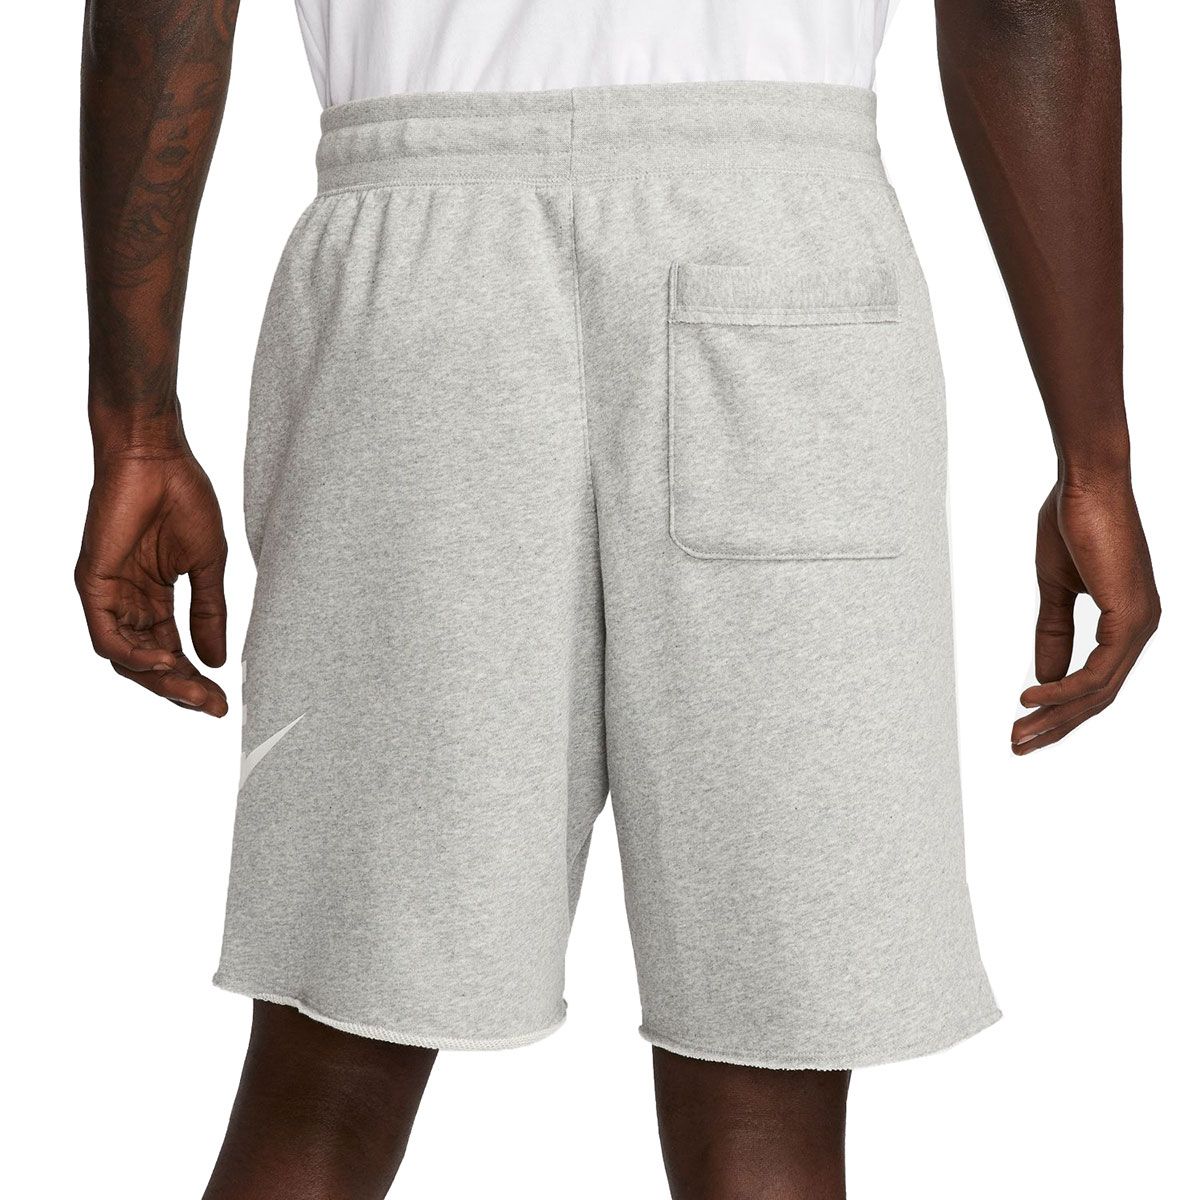 Nike Sportswear Club Fleece Men's Cargo Pants CD3129-259